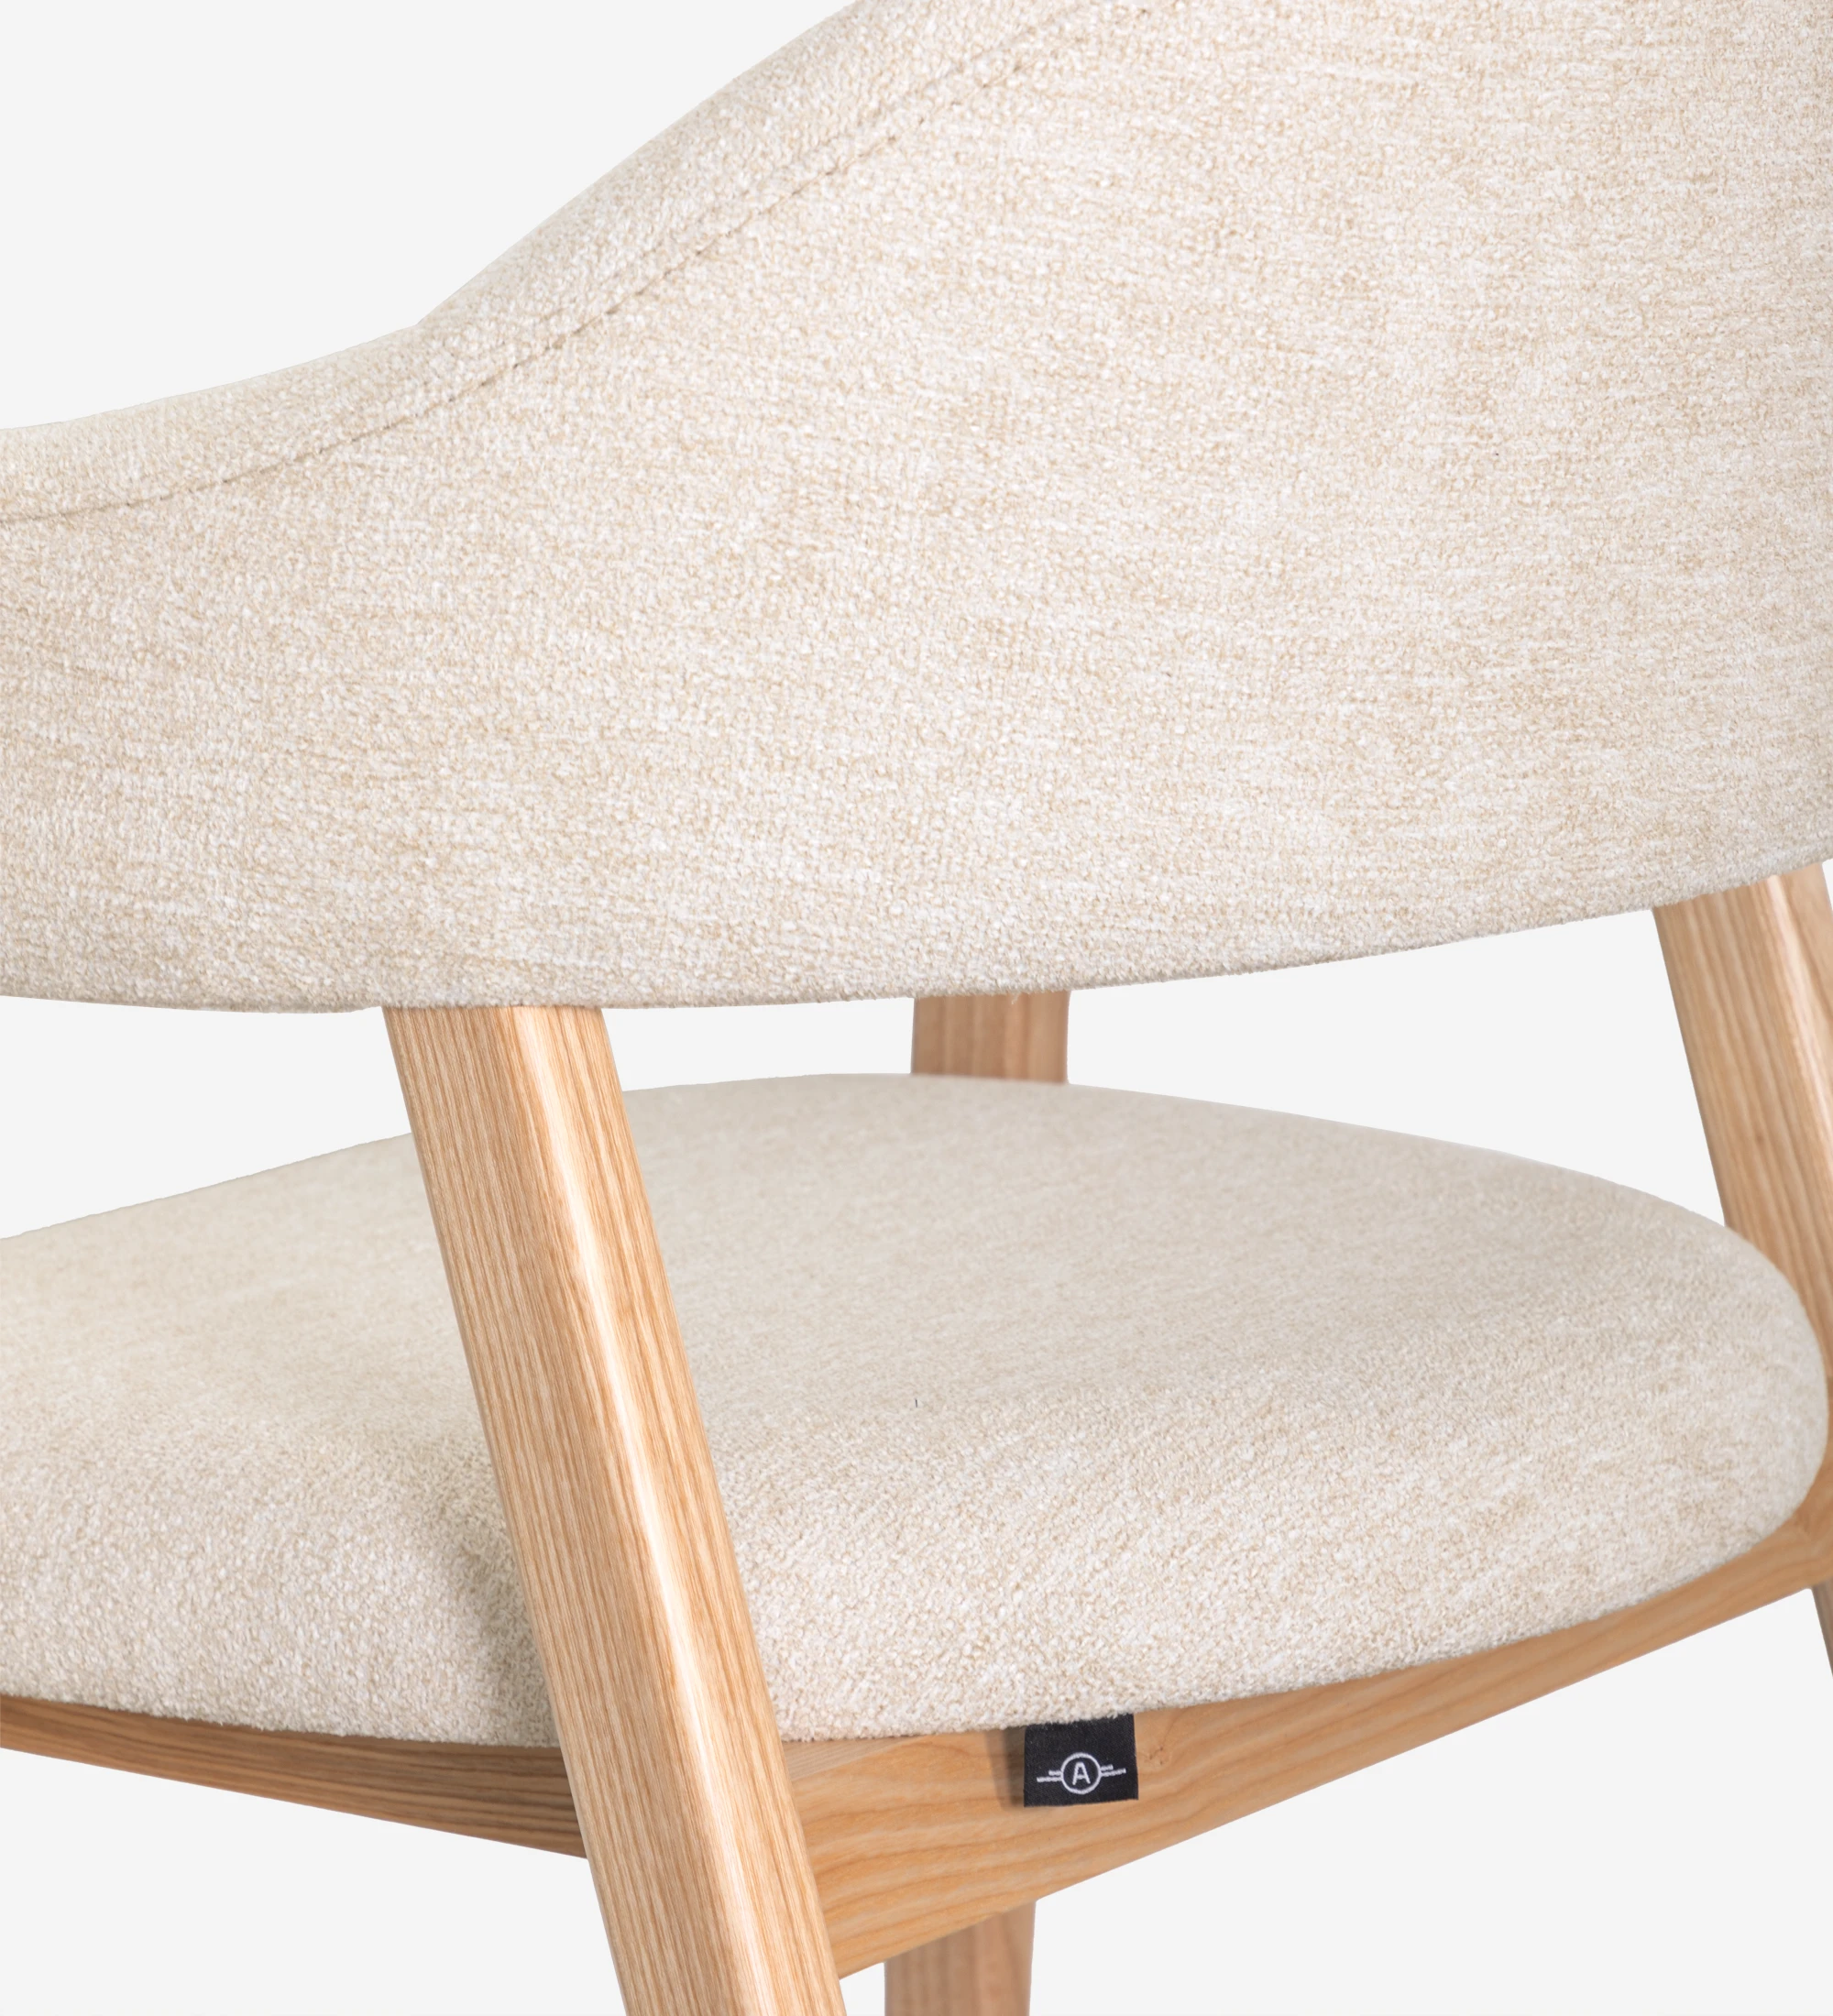 Silla con brazos, en madera de fresno natural, con asiento y respaldo tapizados en tela